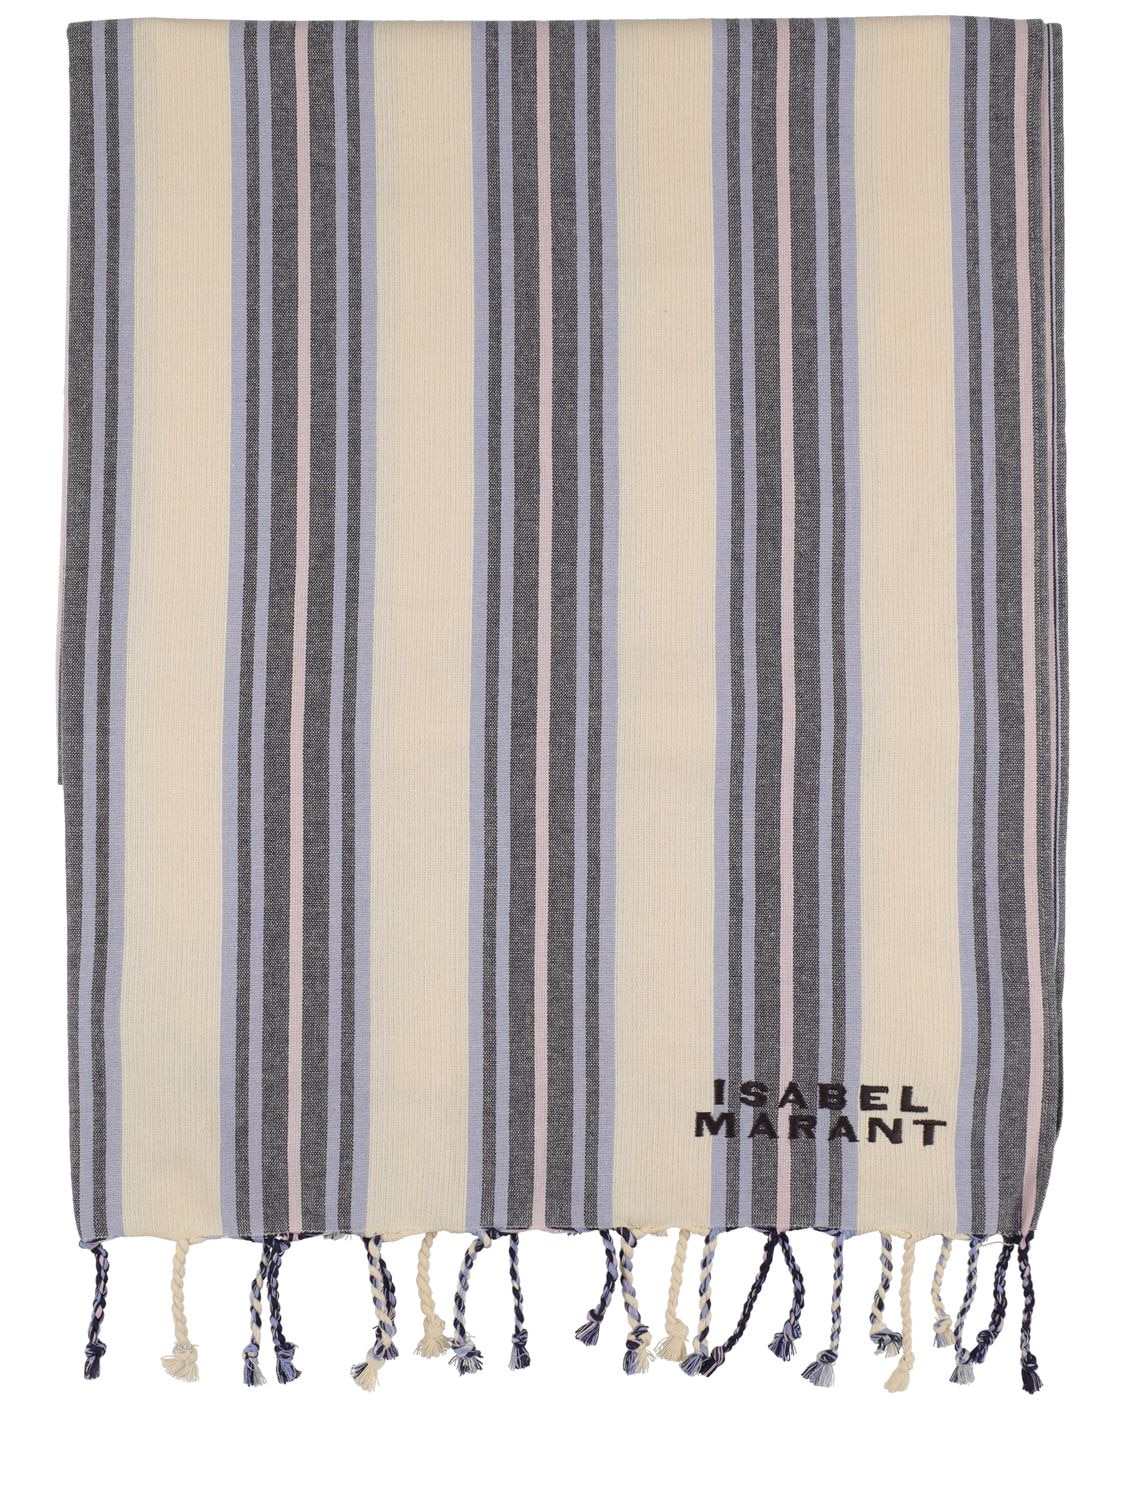 Isabel Marant Striped Cotton Beach Towel In Ecru,blue